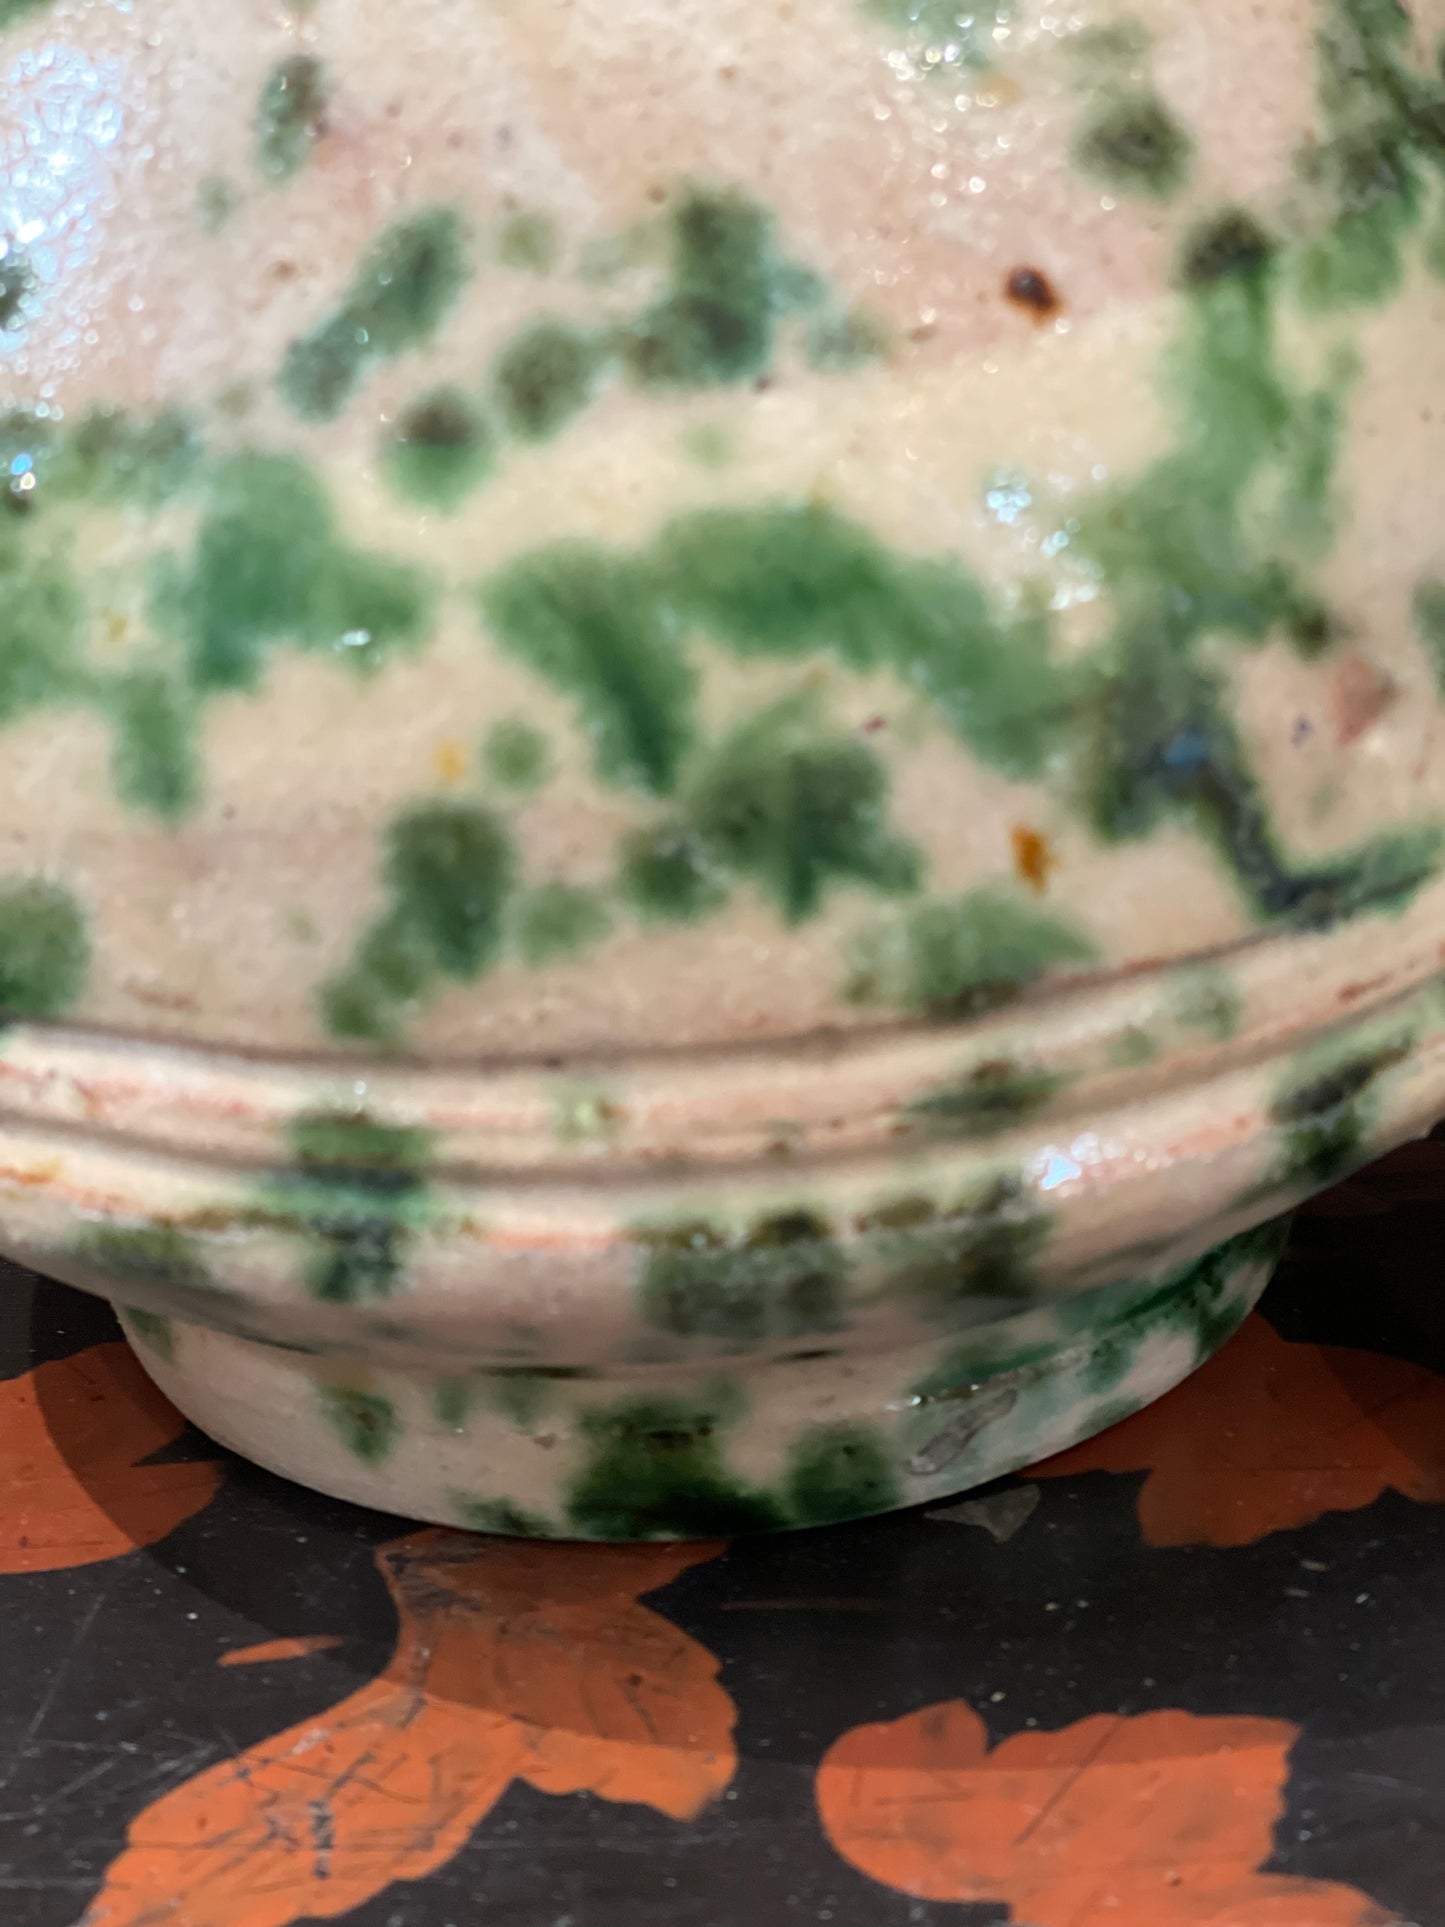 Antique 'Smammriato' Urn or Yeast Jar